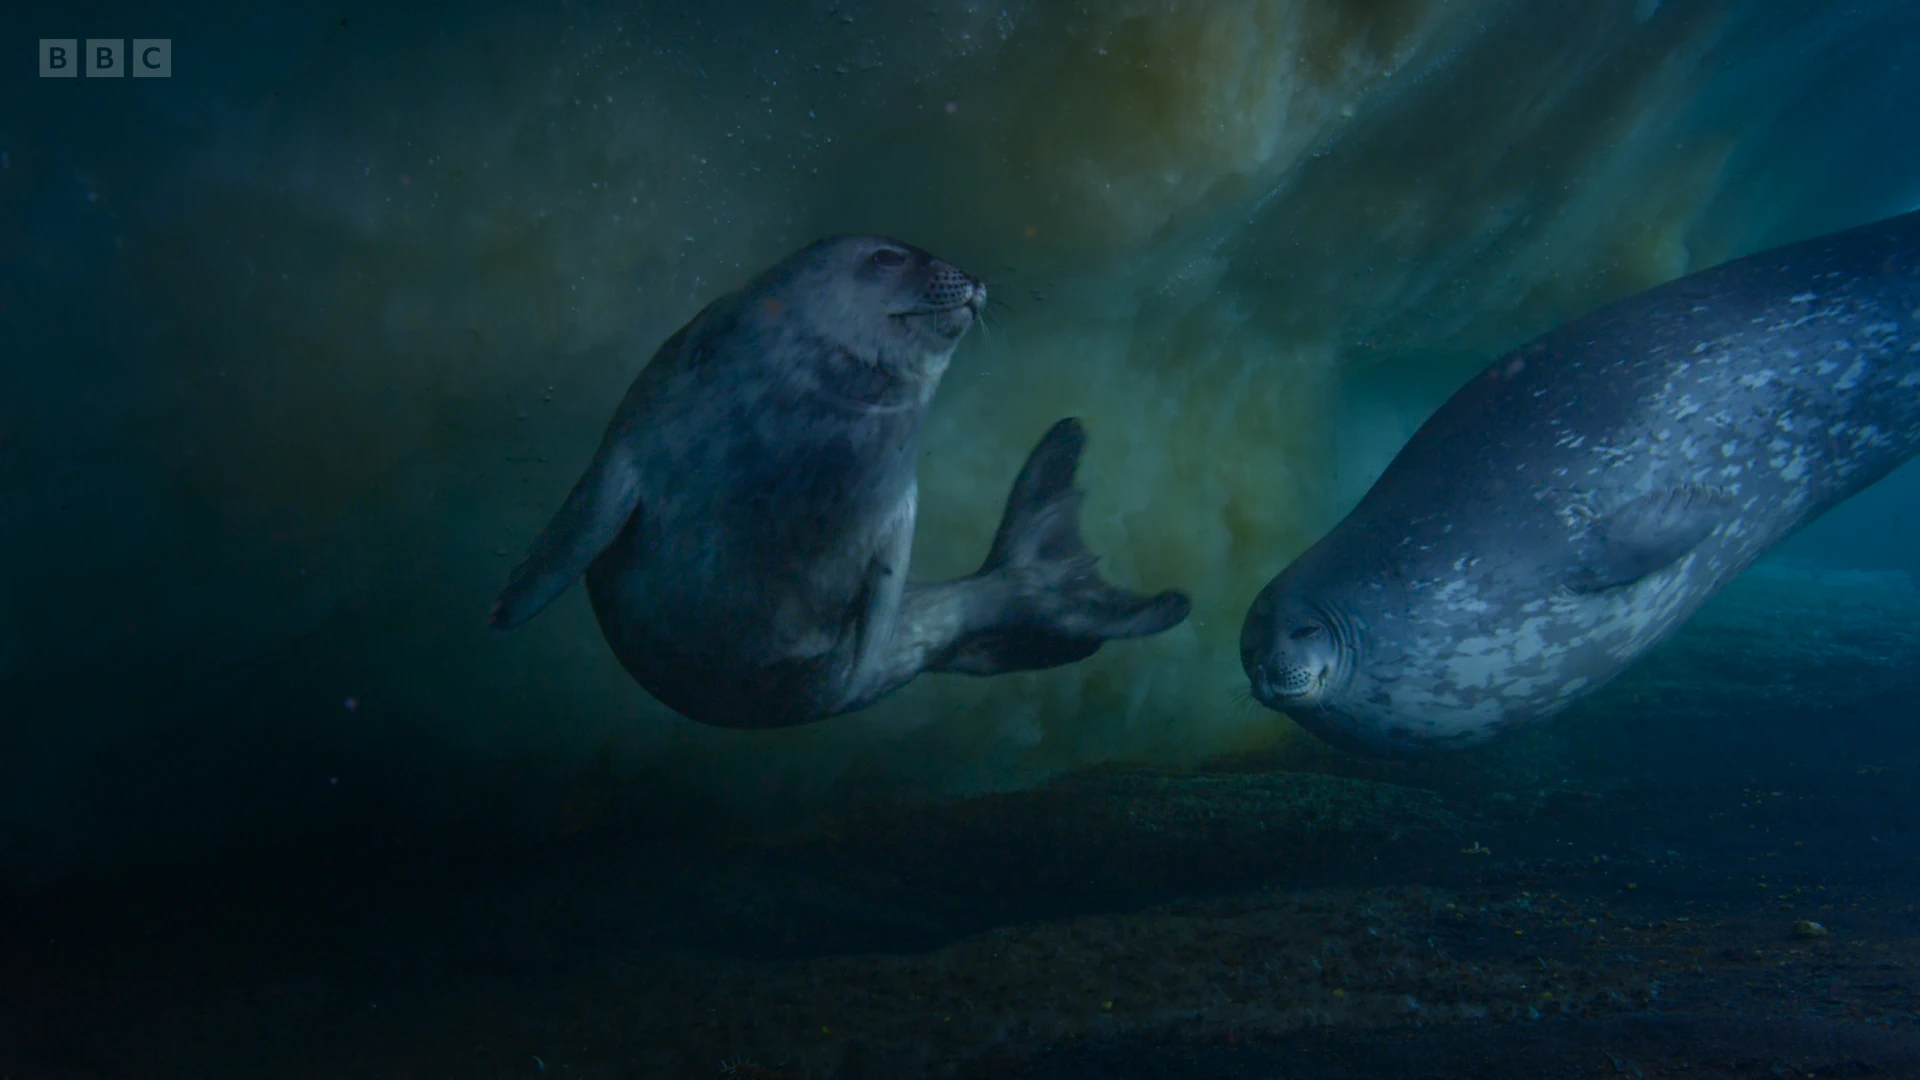 Weddell seal (Leptonychotes weddellii) as shown in Frozen Planet II - Frozen South